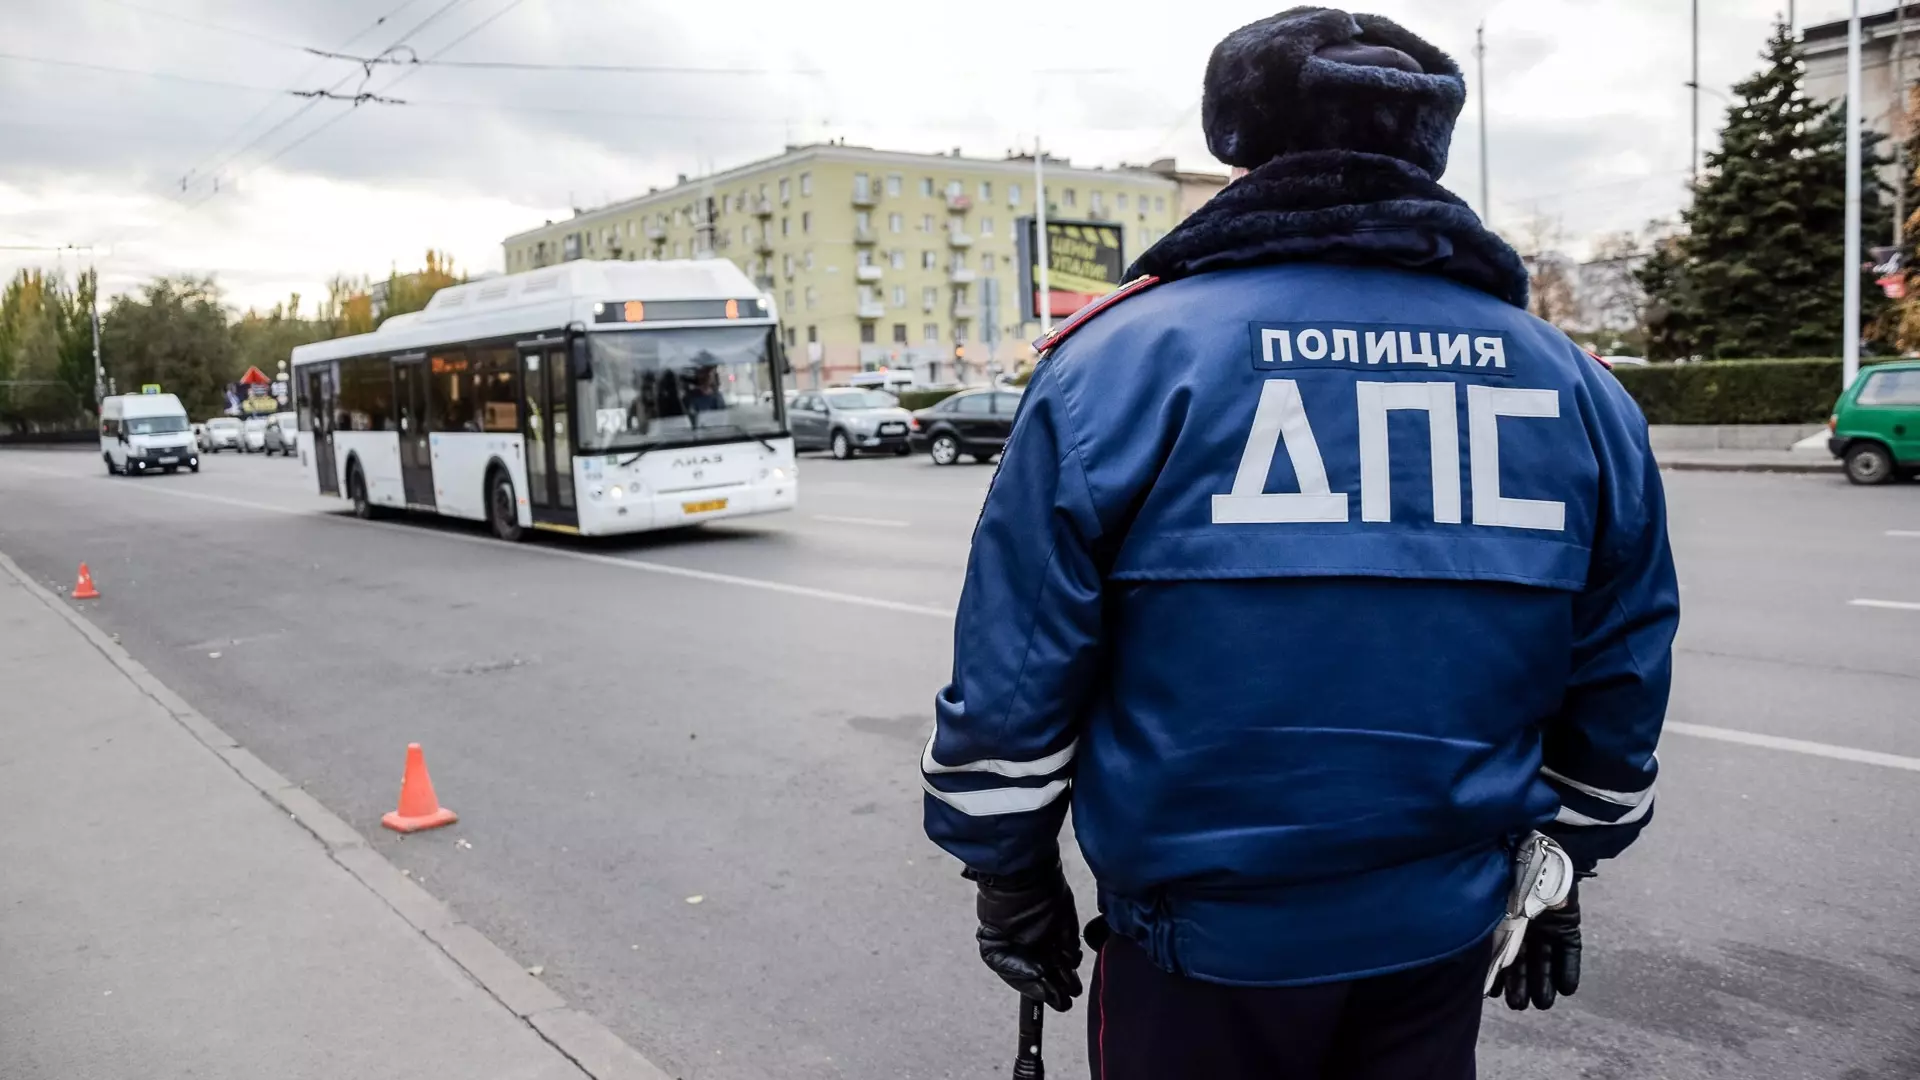 22 неисправных автобуса насчитали на рейсах в Челябинске